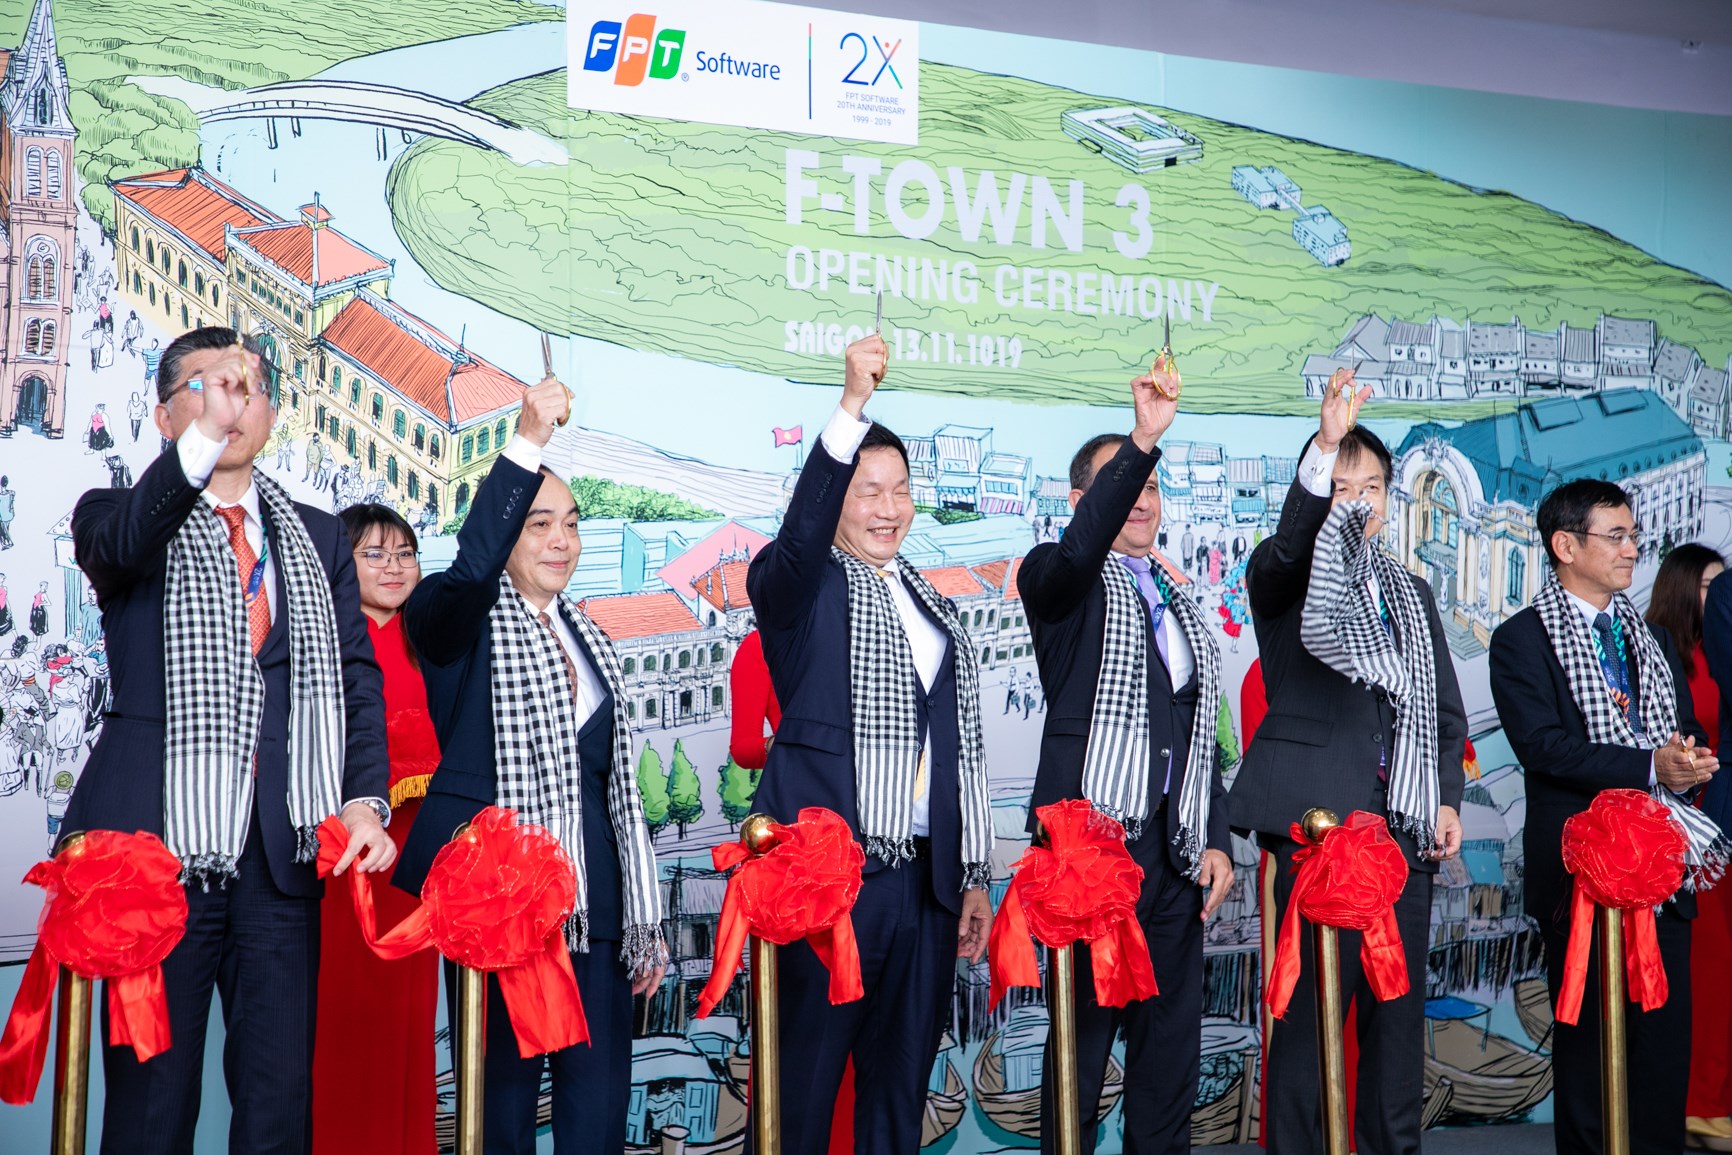 FPT Software khánh thành F-Town 3 - Tổ hợp văn phòng công nghệ hiện đại giữa lòng TP. Hồ Chí Minh